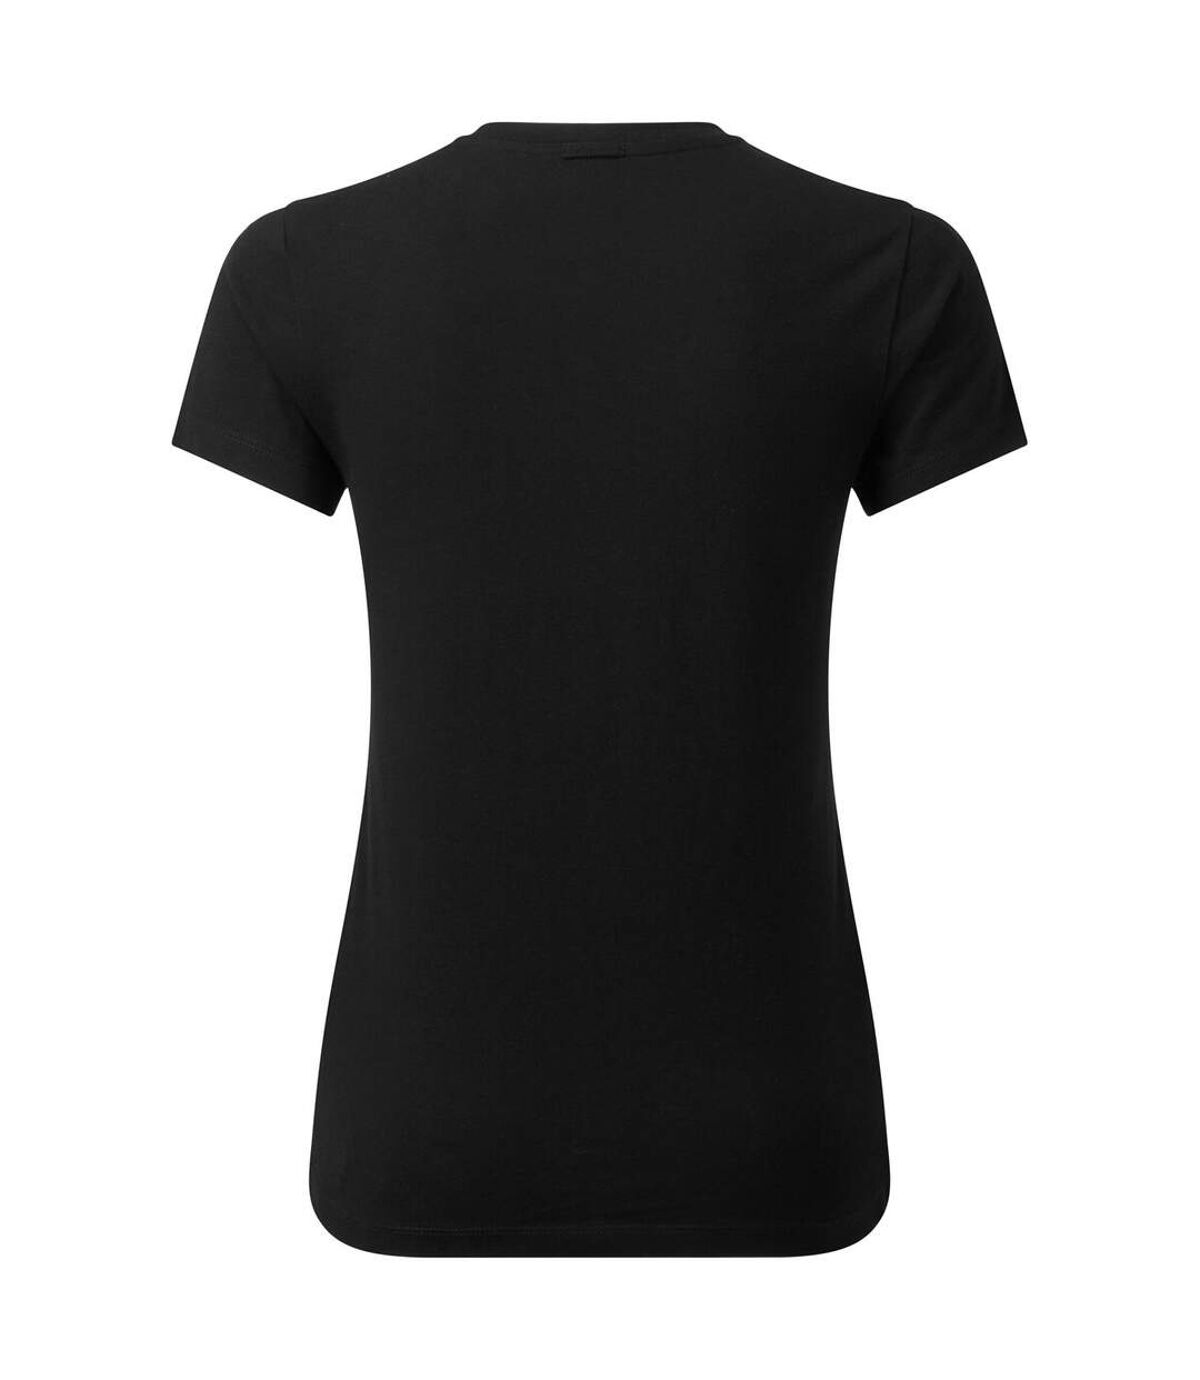 Premier T-shirt durable Comis pour femmes/dames (Noir) - UTPC4827